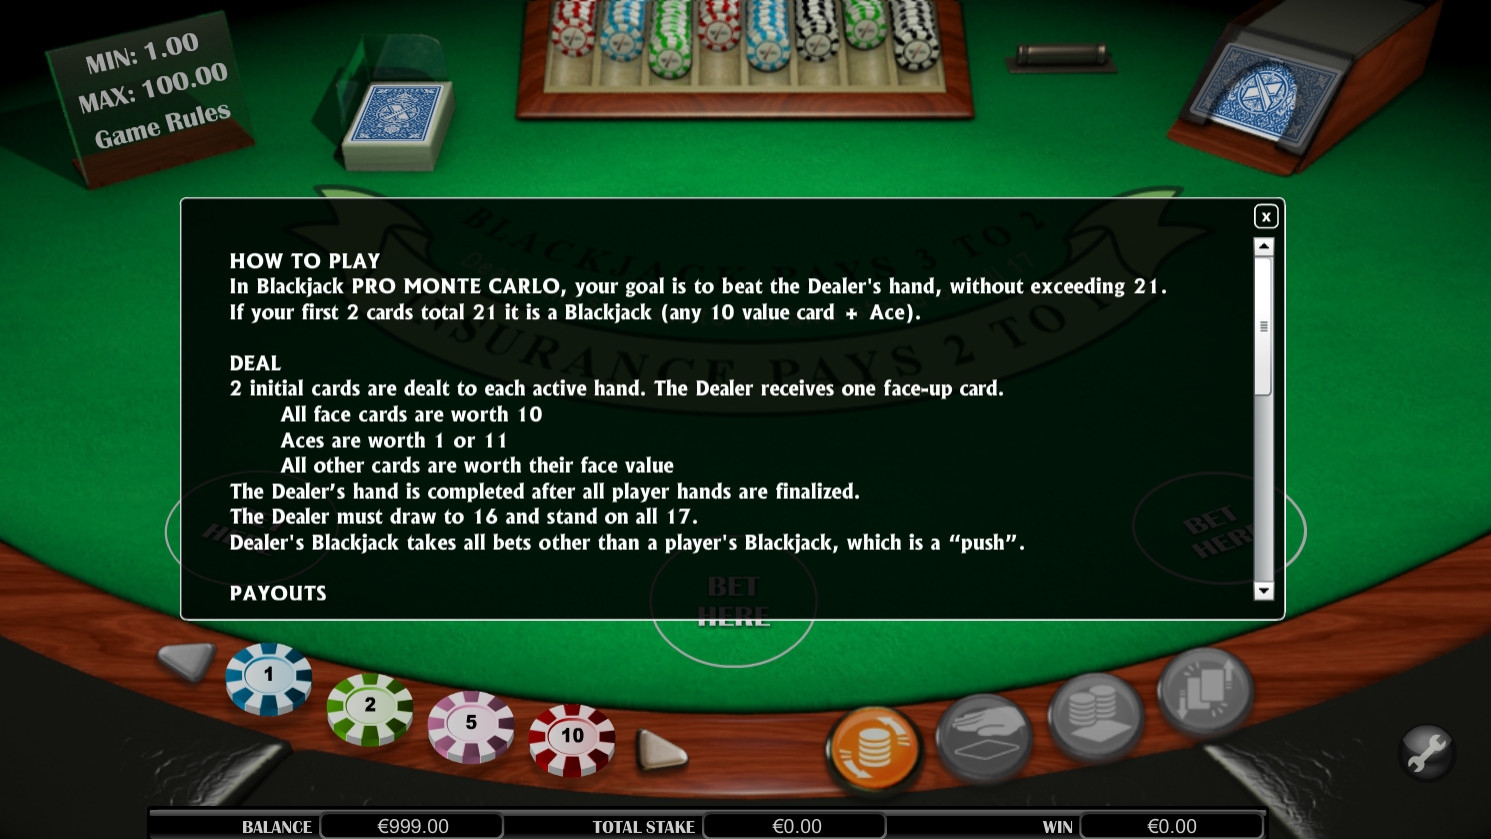 Blackjack Pro Monte Carlo Multihand Gaming